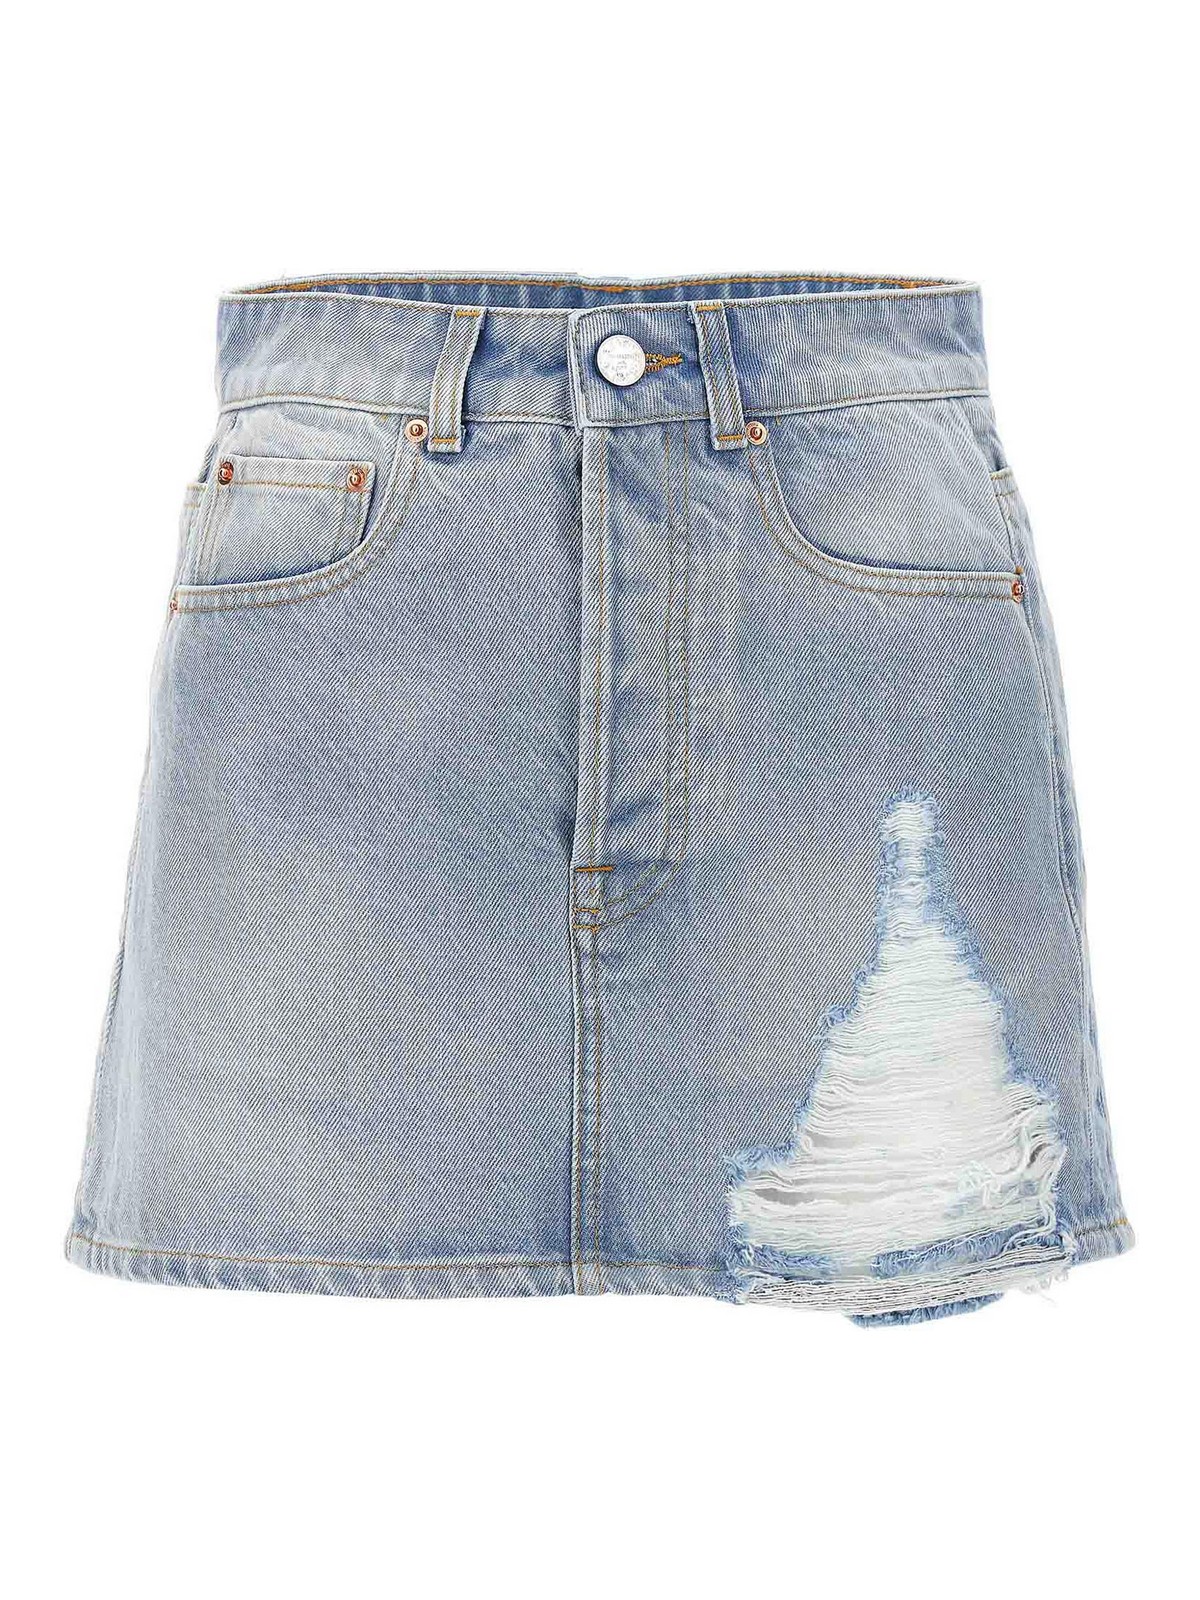 Vetements Destroyed Skirt In Light Blue